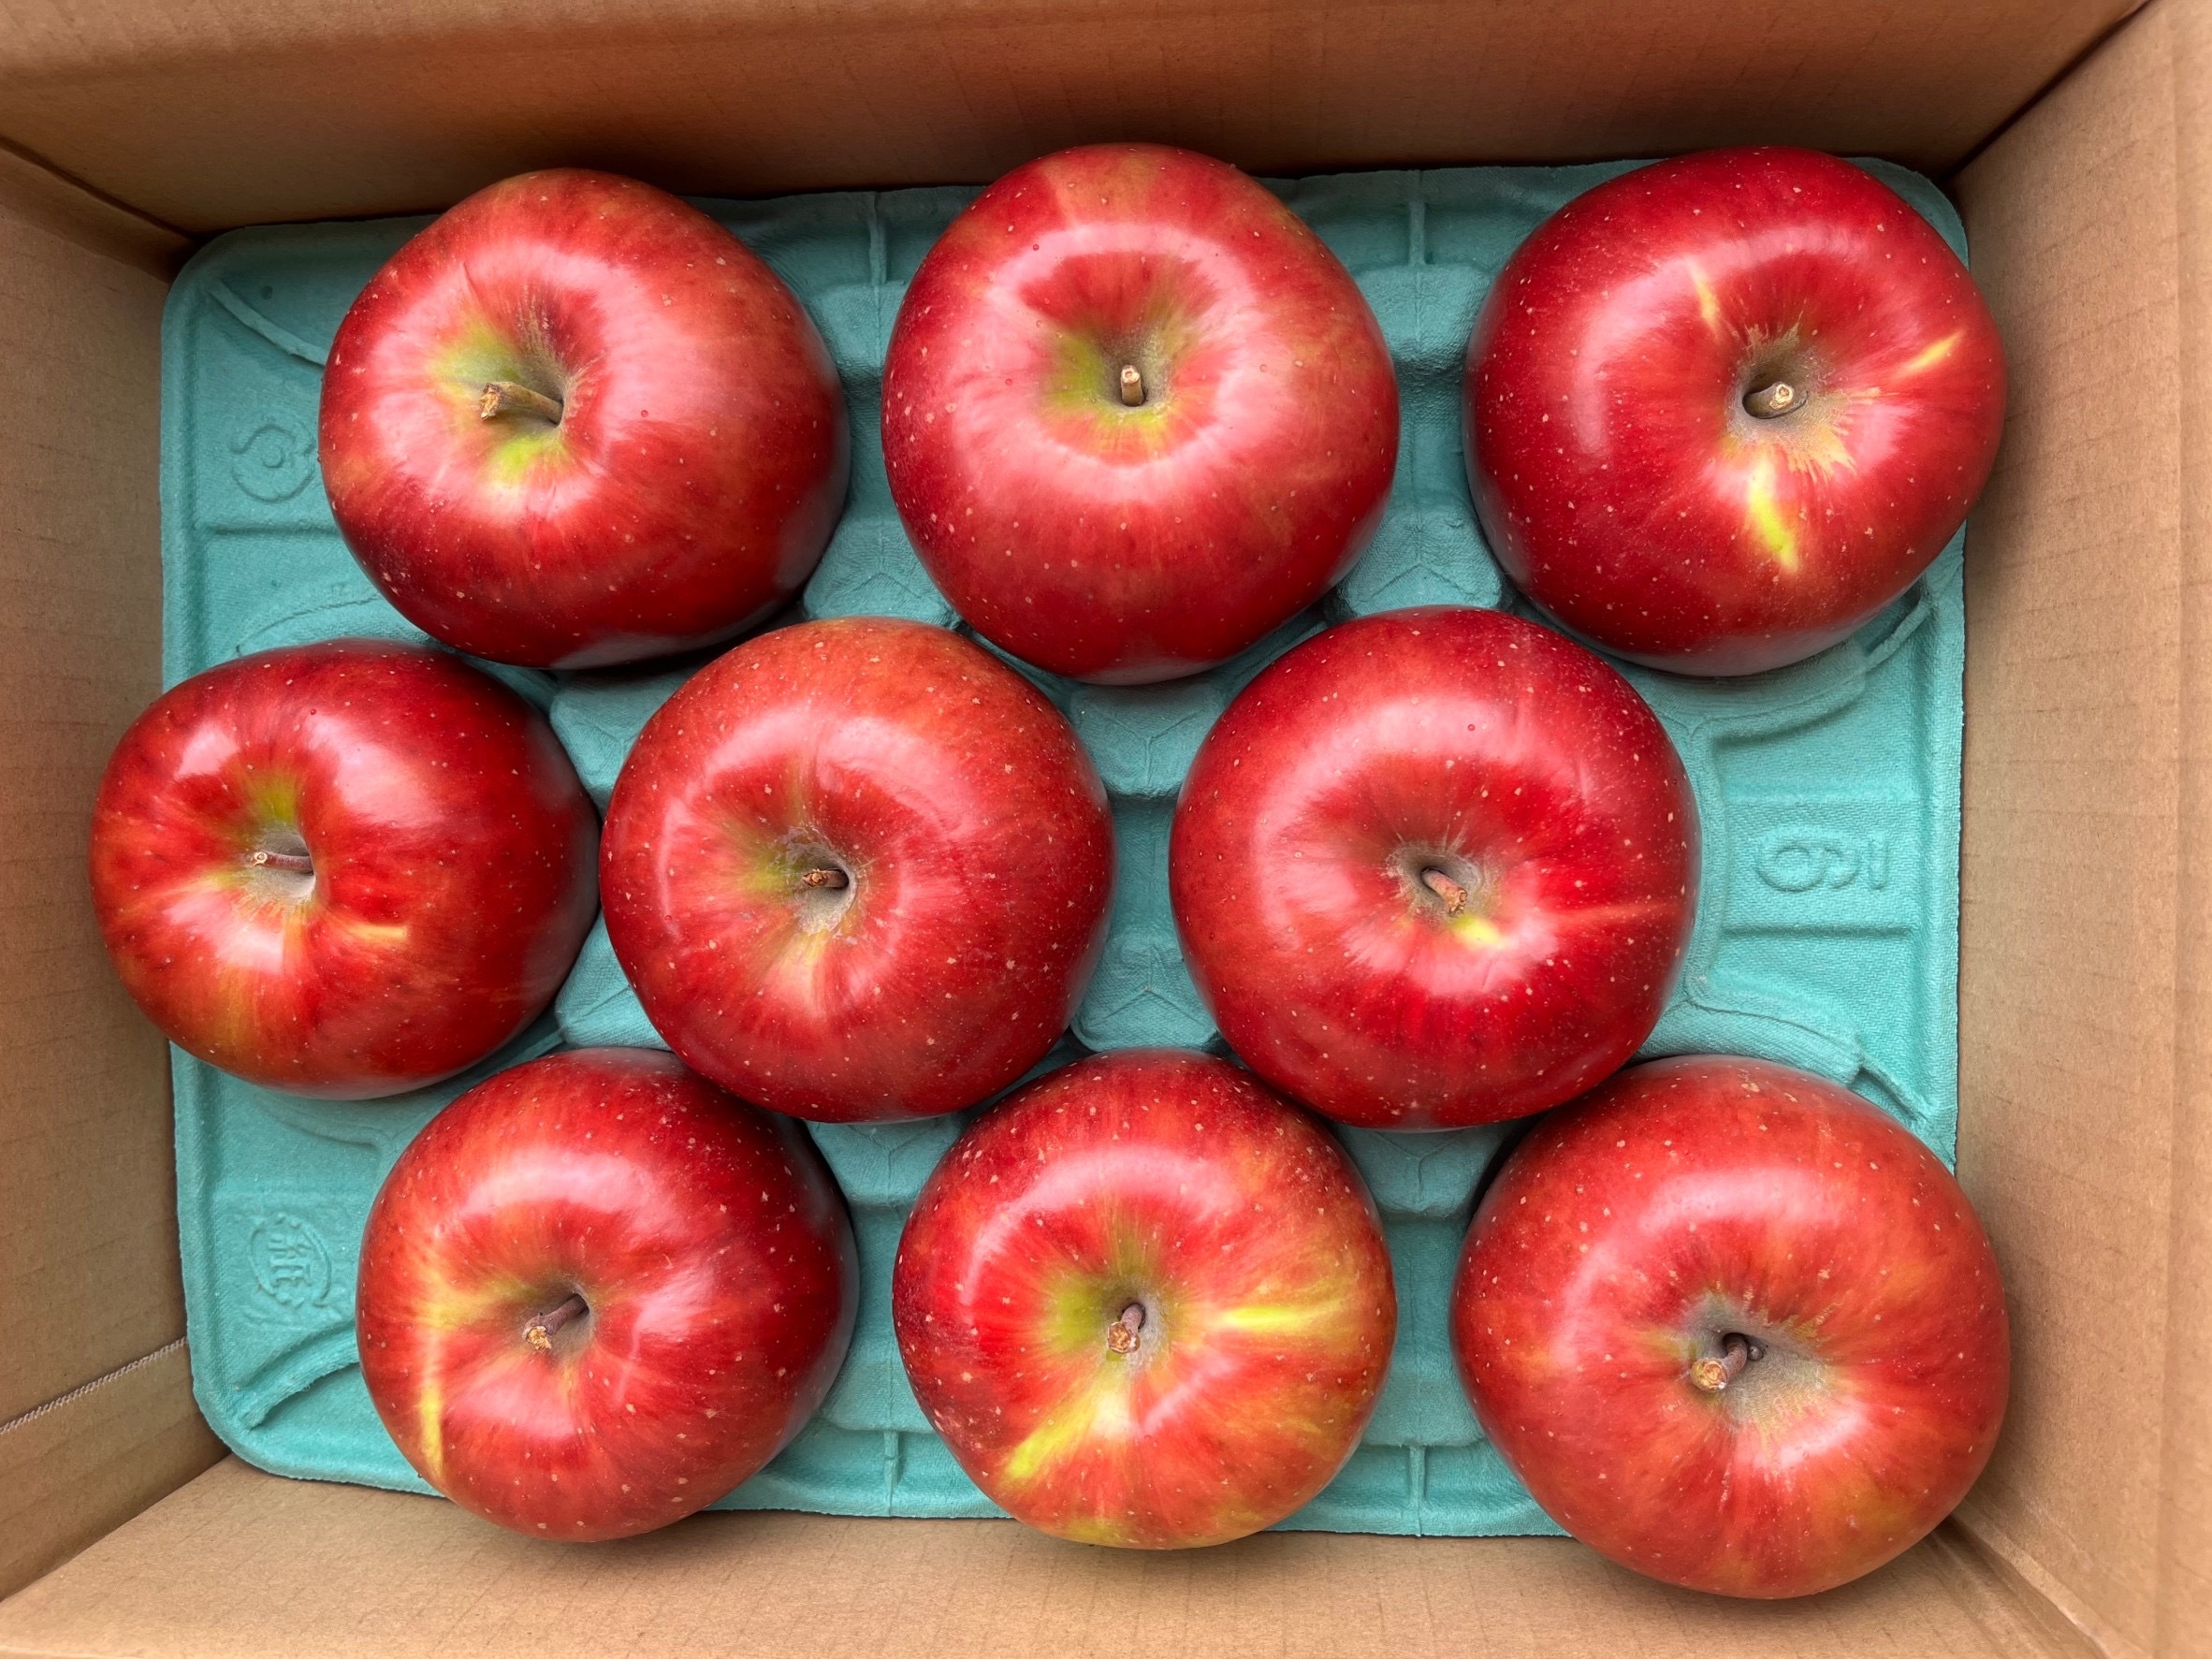 爆売り 8月8日から収穫 発送 すっぱい 夏りんご シナノレッド5キロ箱訳あり 8月りんご 酸っぱいりんご